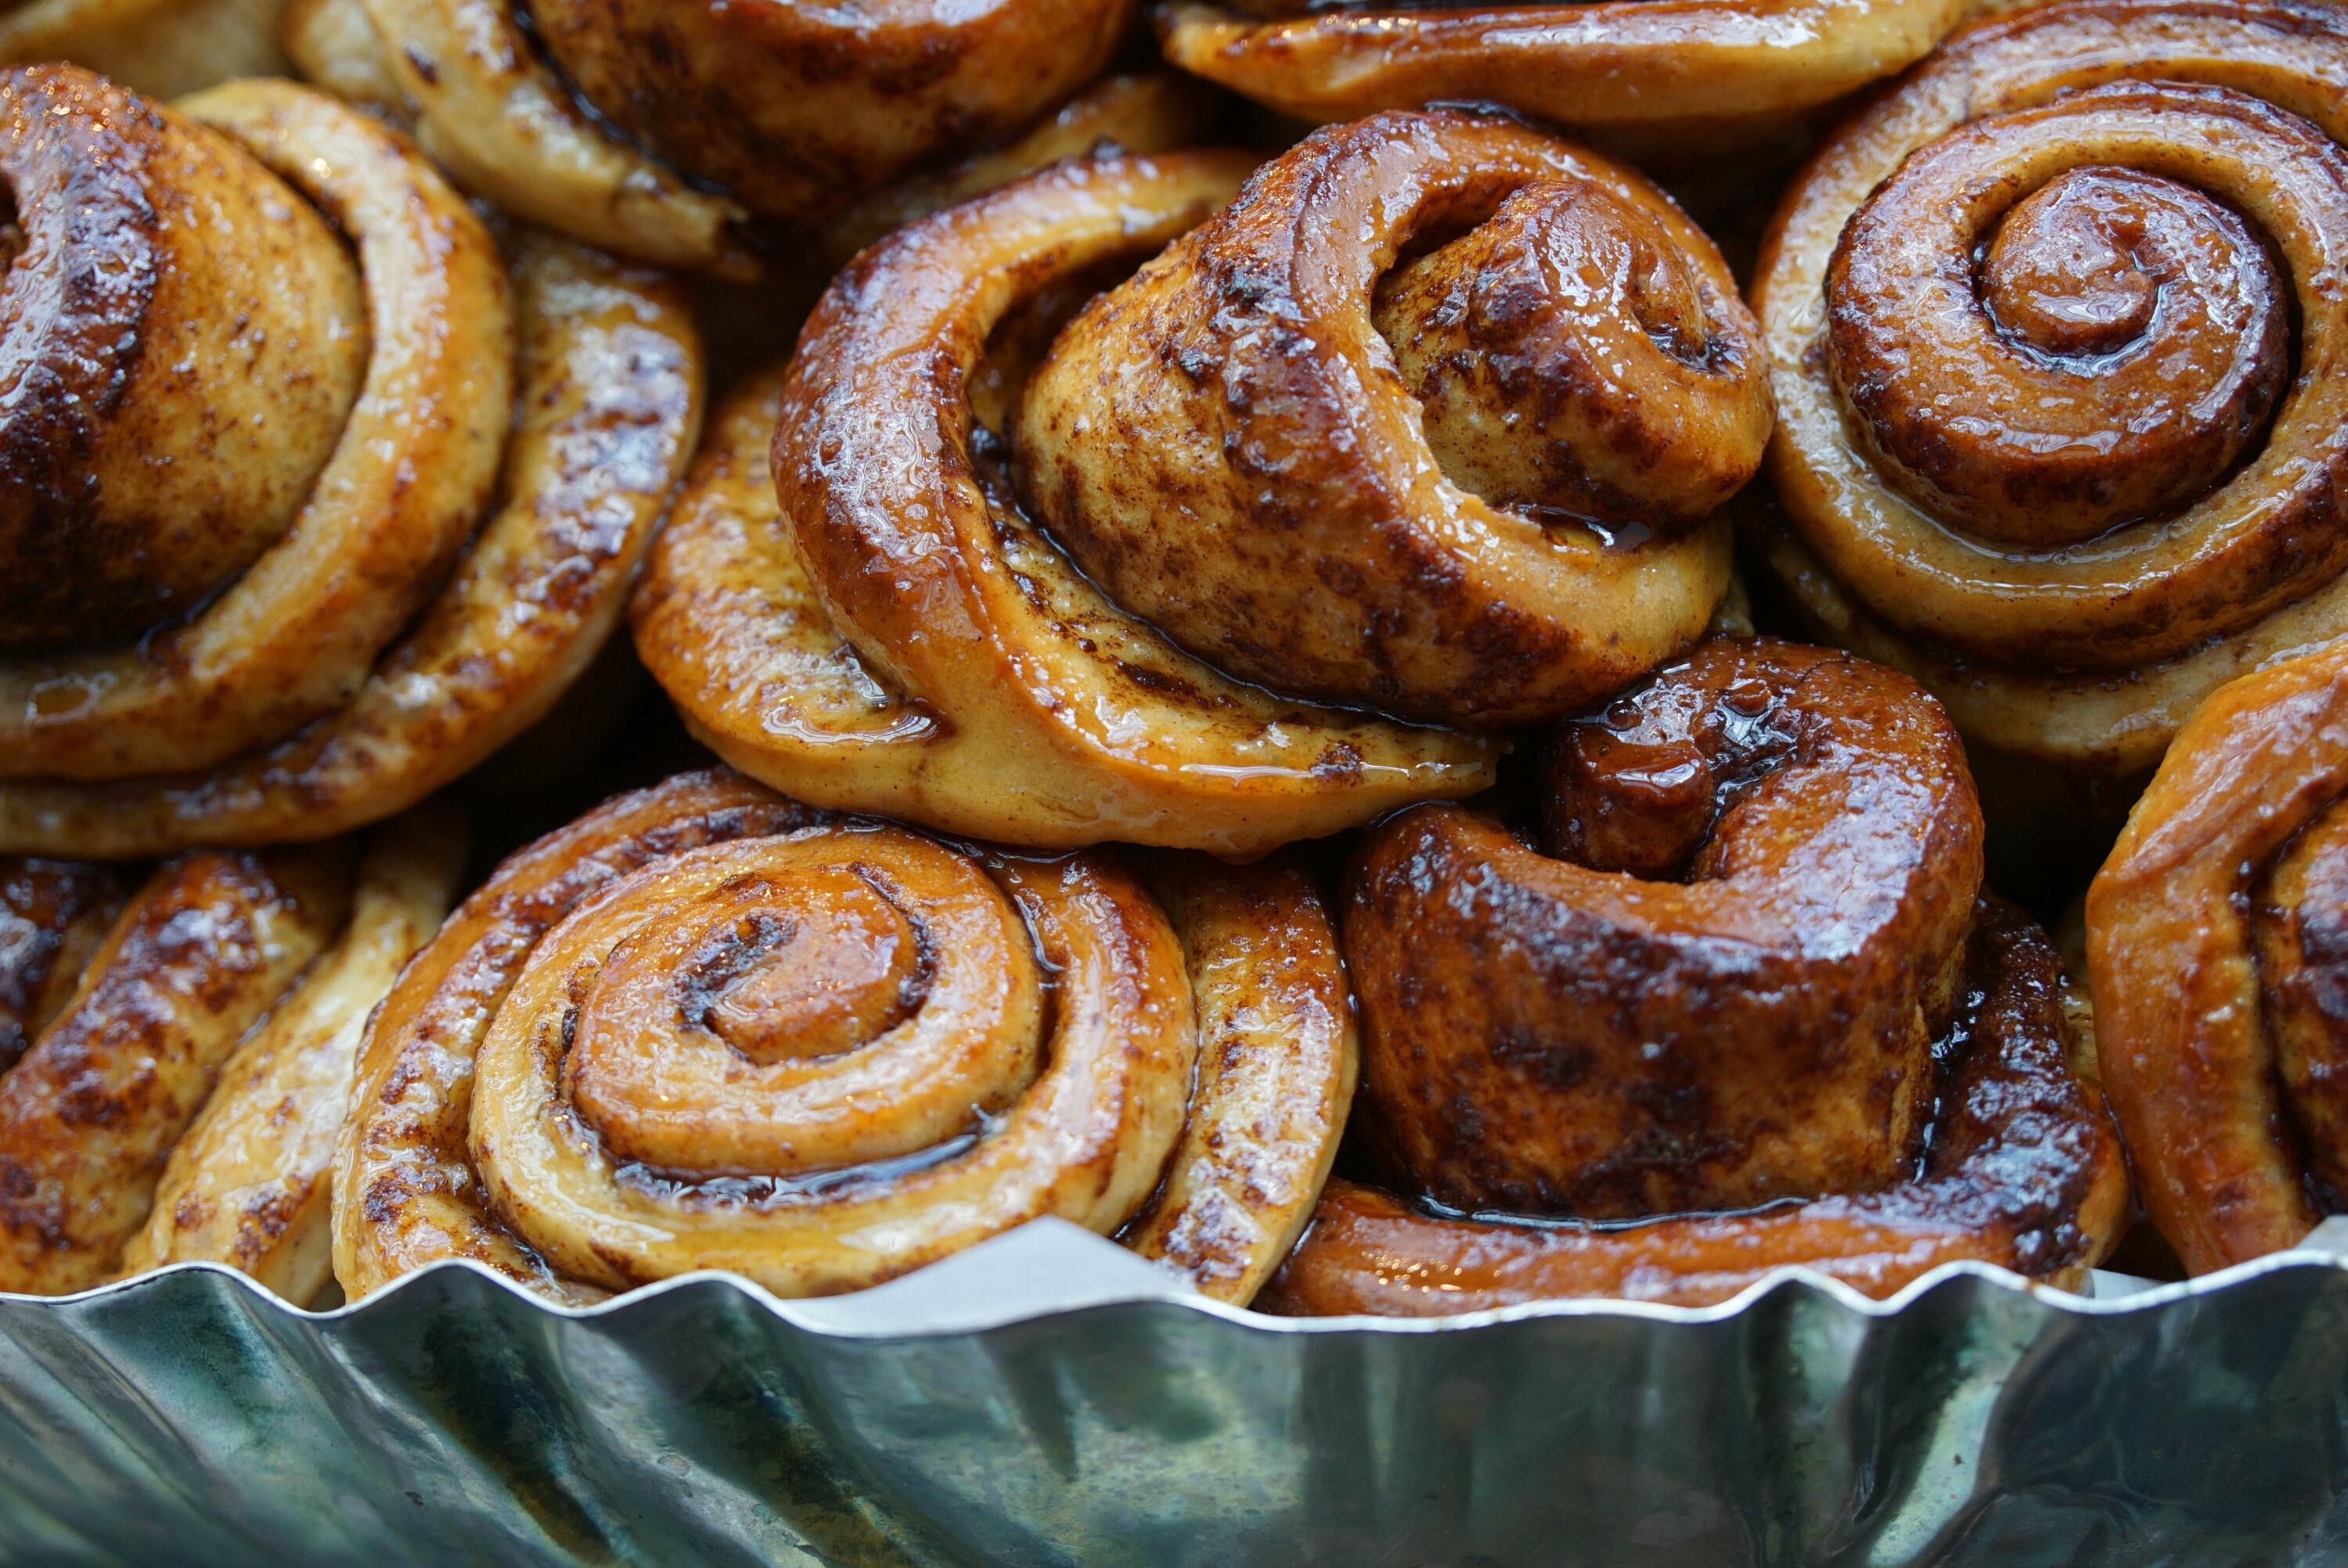 Um dos doces mais famosos do mundo, o cinnamon roll. Custam a